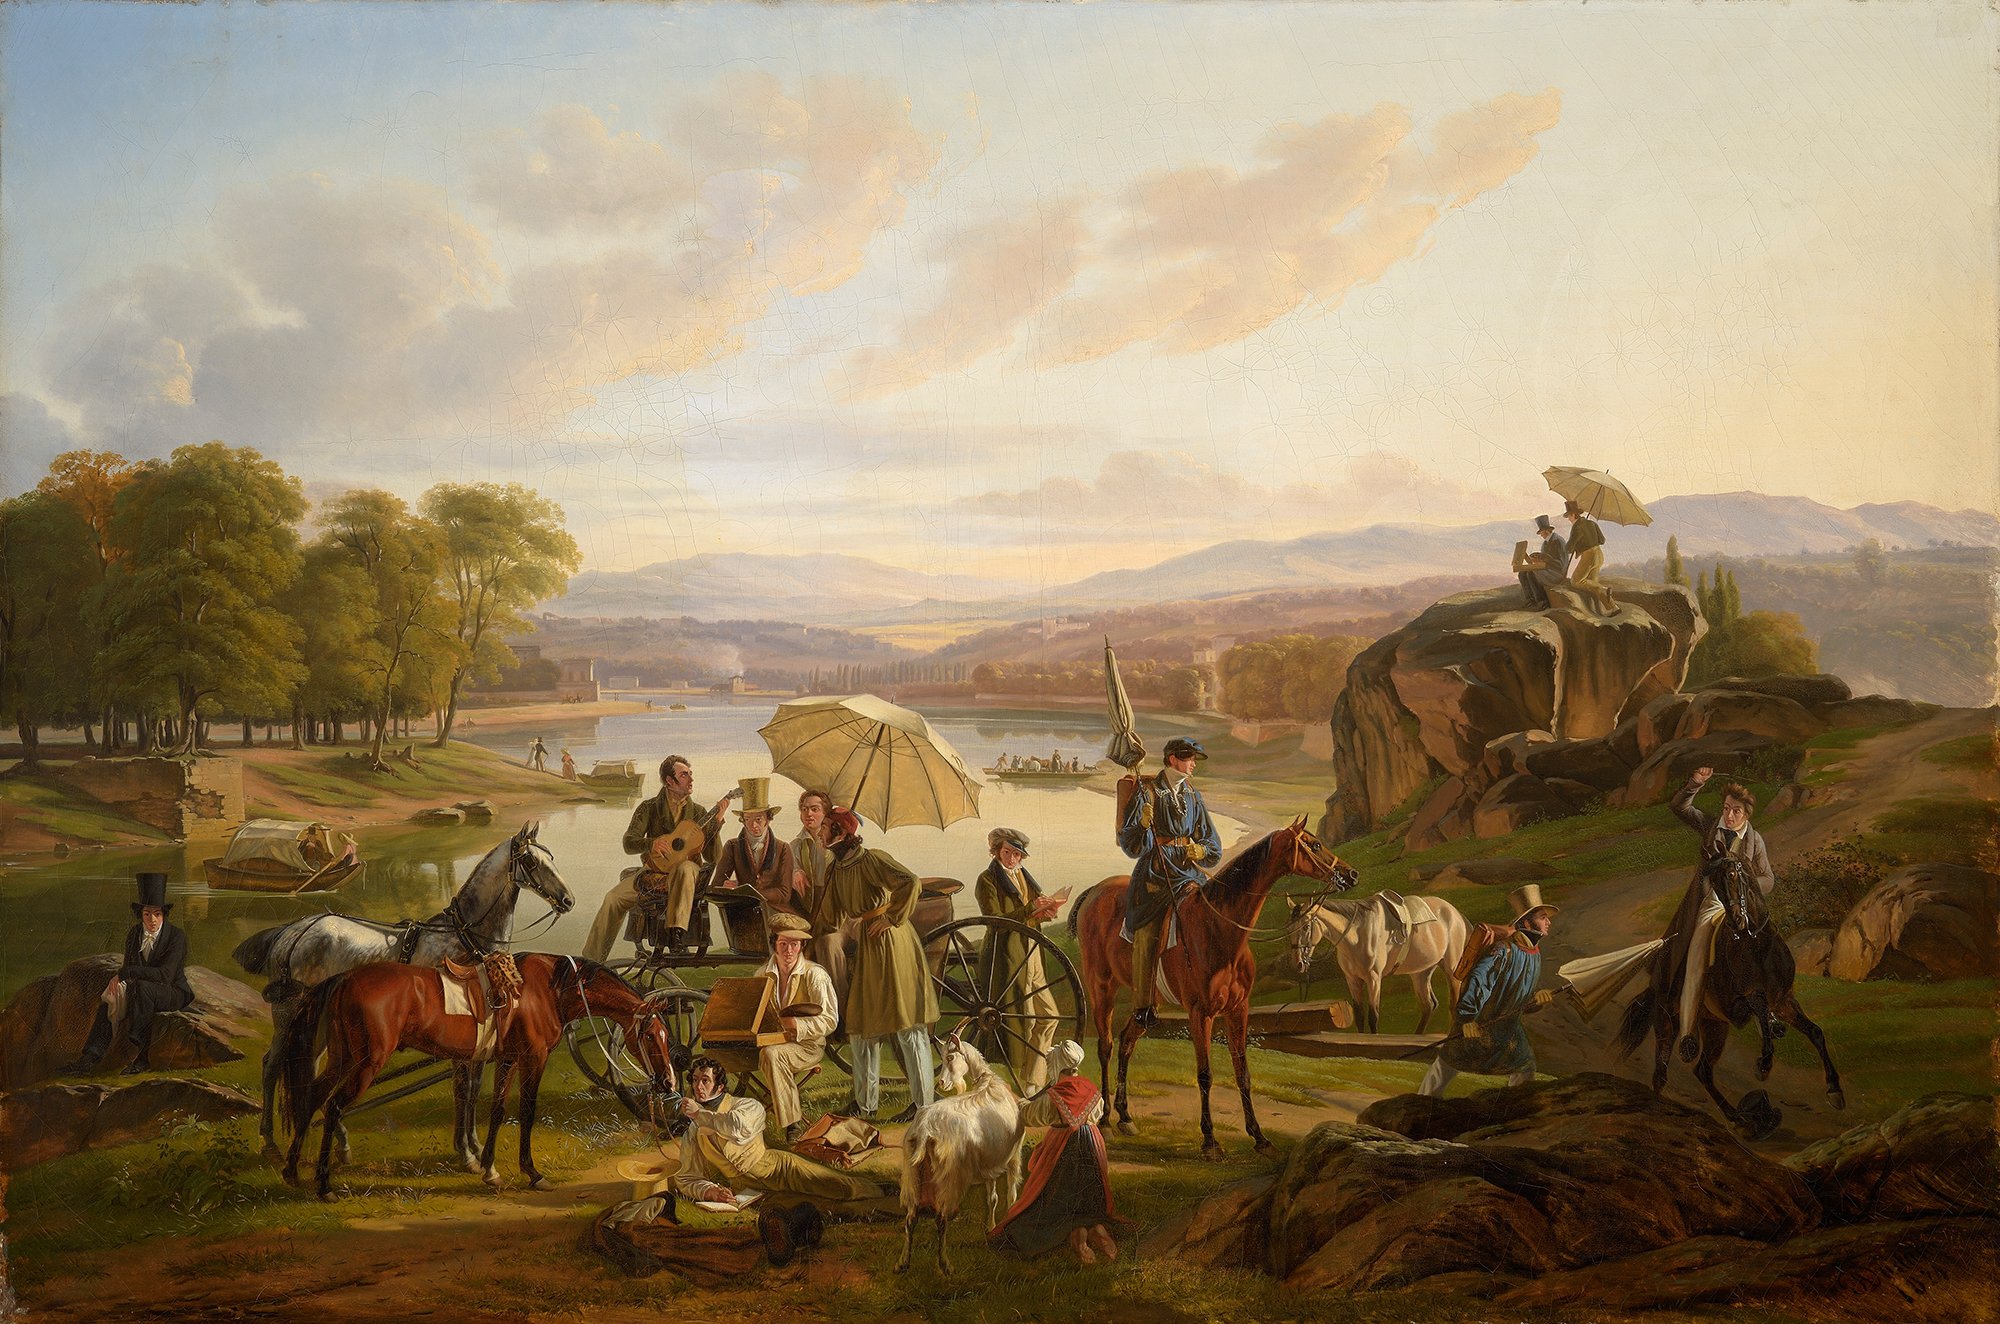 Abbildung des Werks "Rast der Künstler am Ufer der Saône" von Antoine Duclaux aus dem Jahr 1824. Das Bild zeigt eine Gruppe Reisender vor einem Fluss. Sie reisen mit Pferden und einem Wagen.